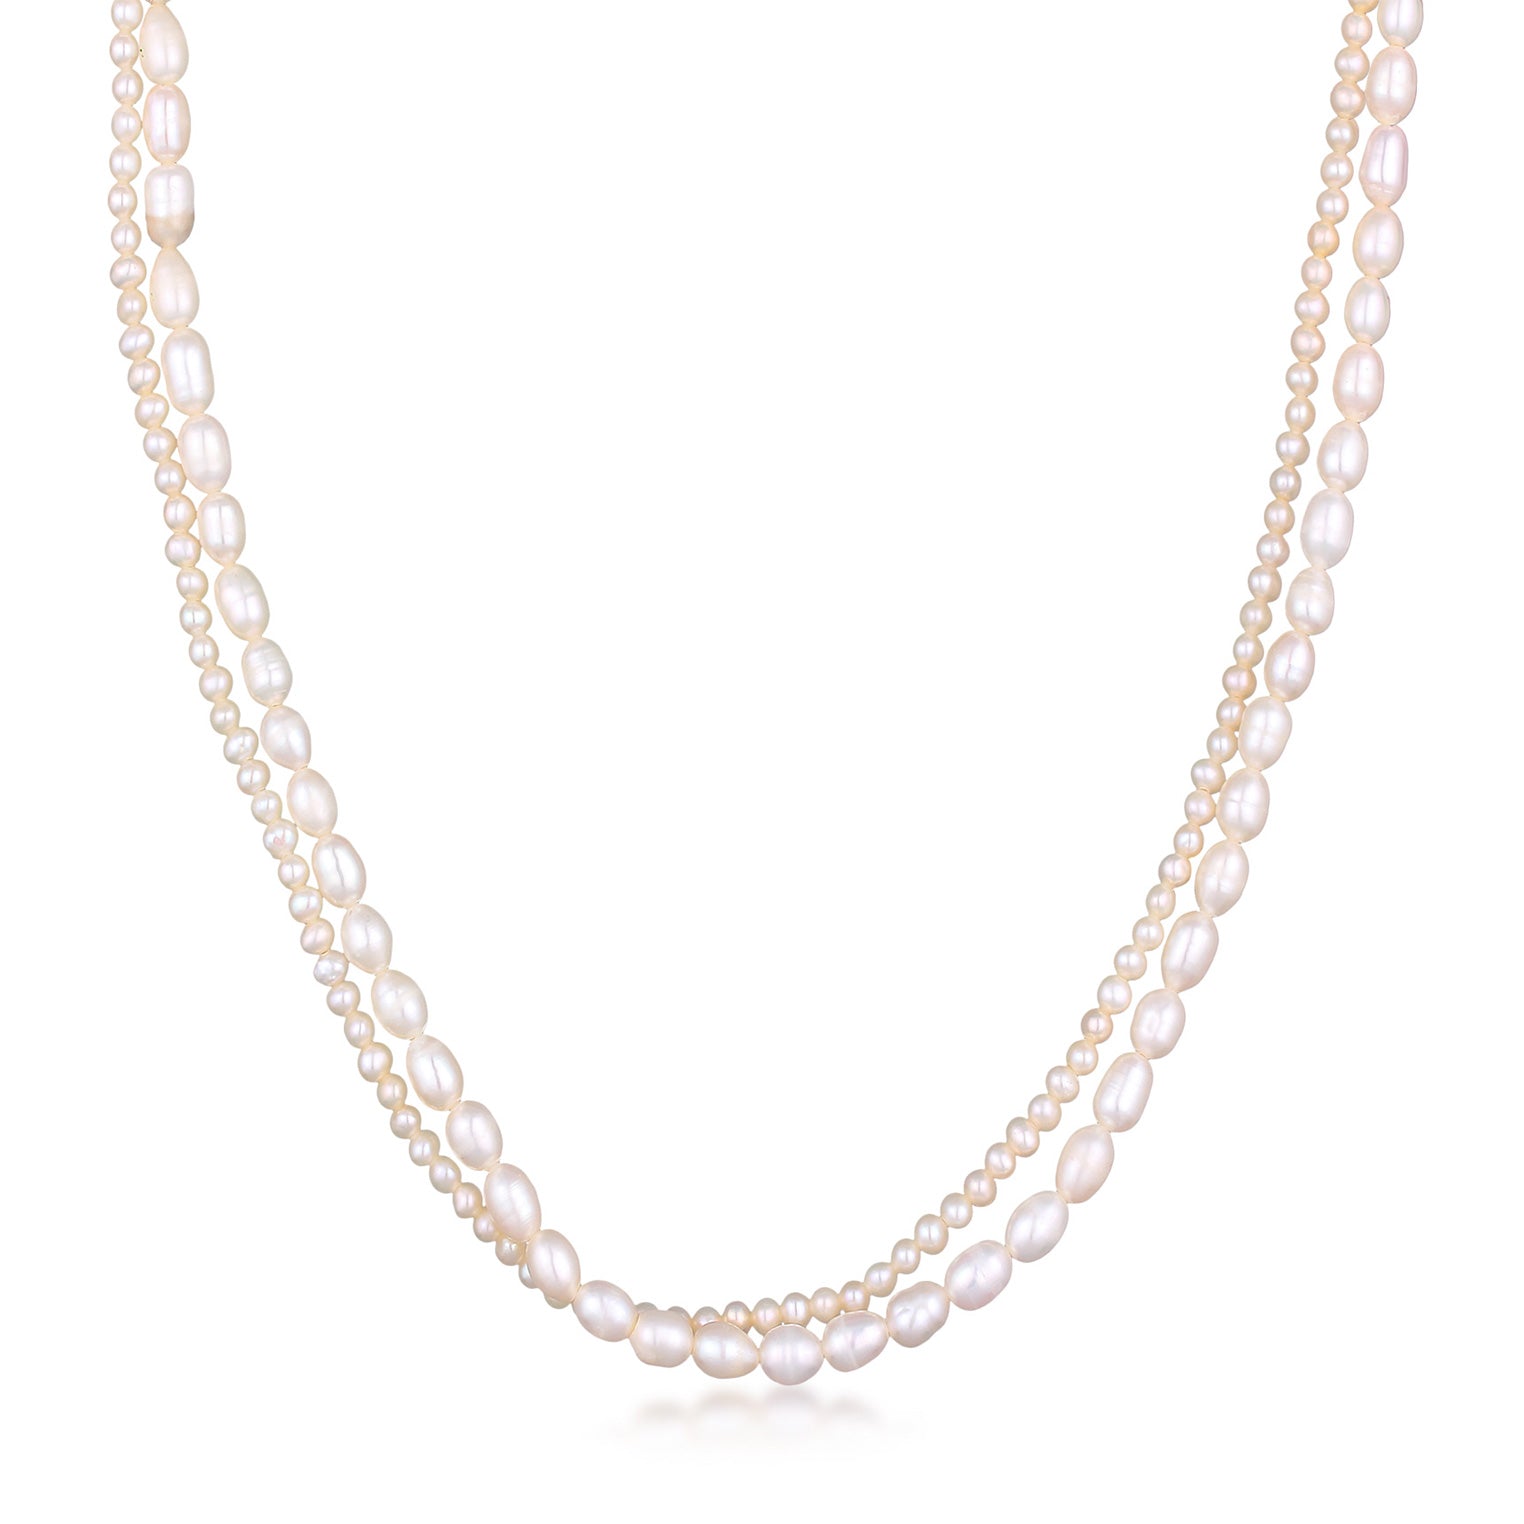 Gold - HAZE & GLORY | Artic Perlenkette 925 Silber vergoldet